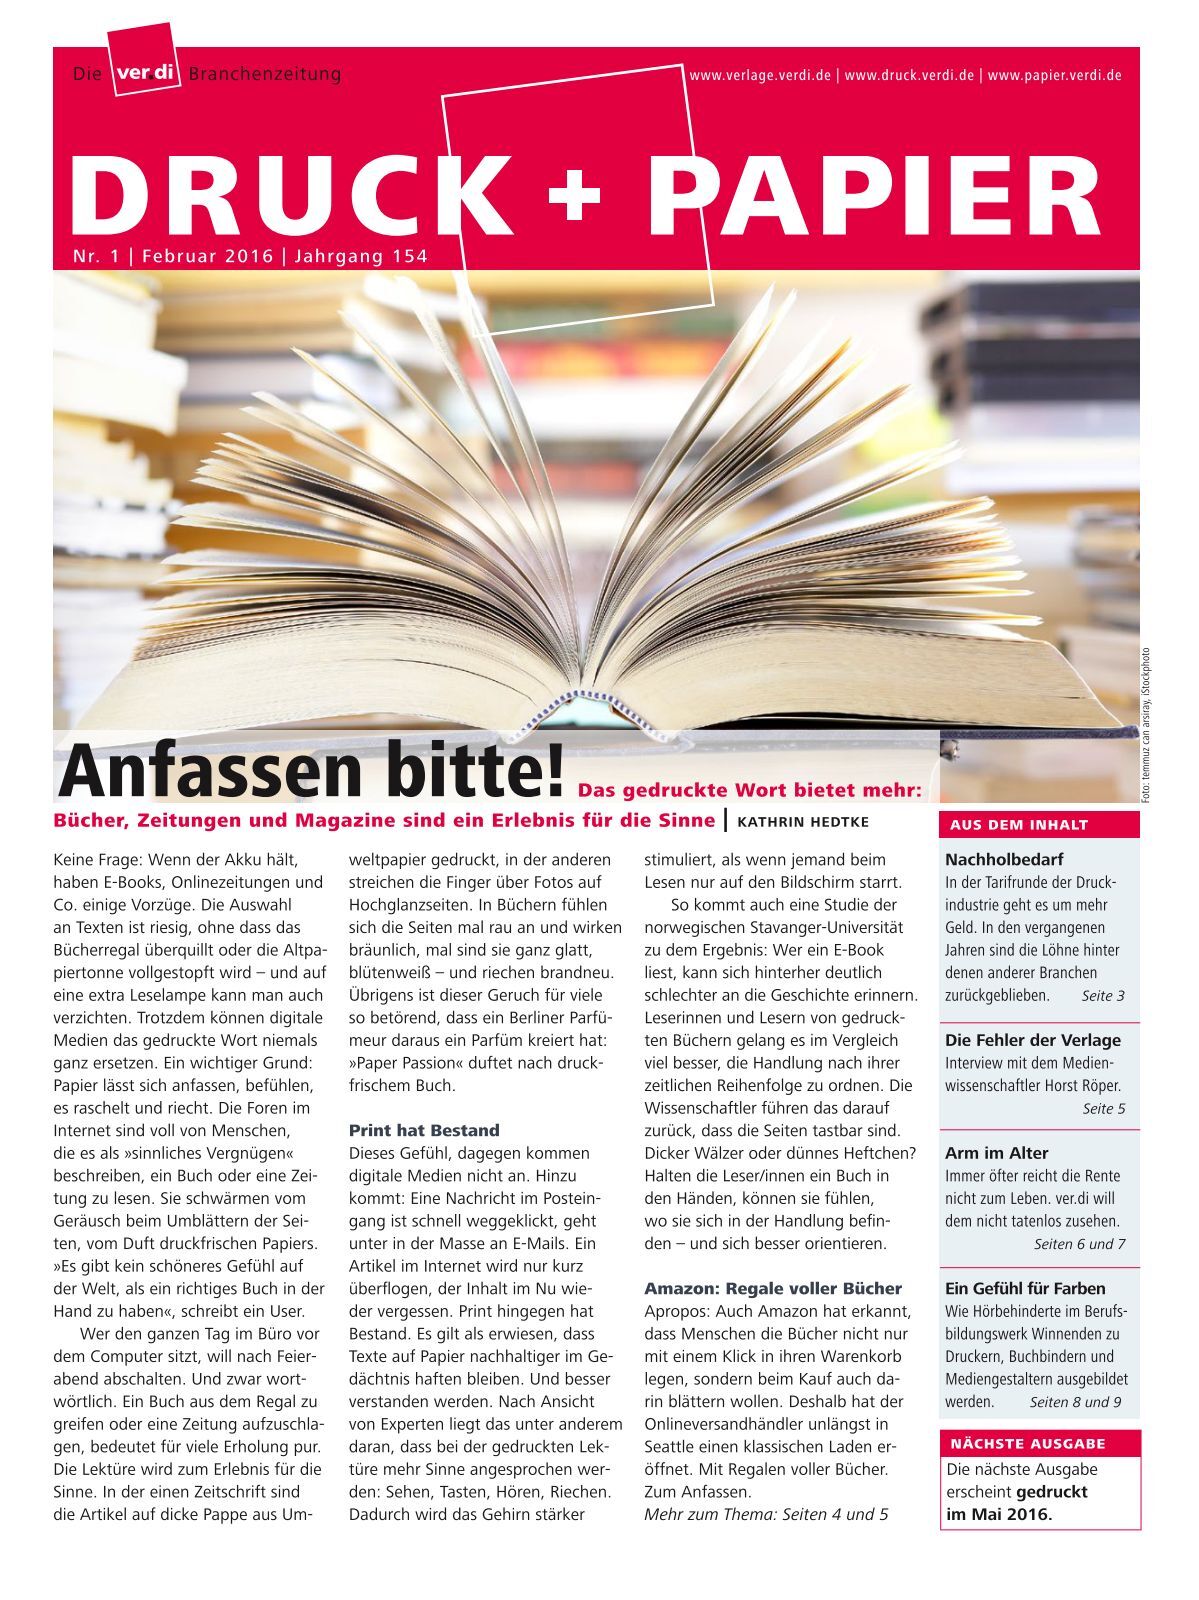 DRUCK+PAPIER | Druck, Verlage, Papier und Industrie